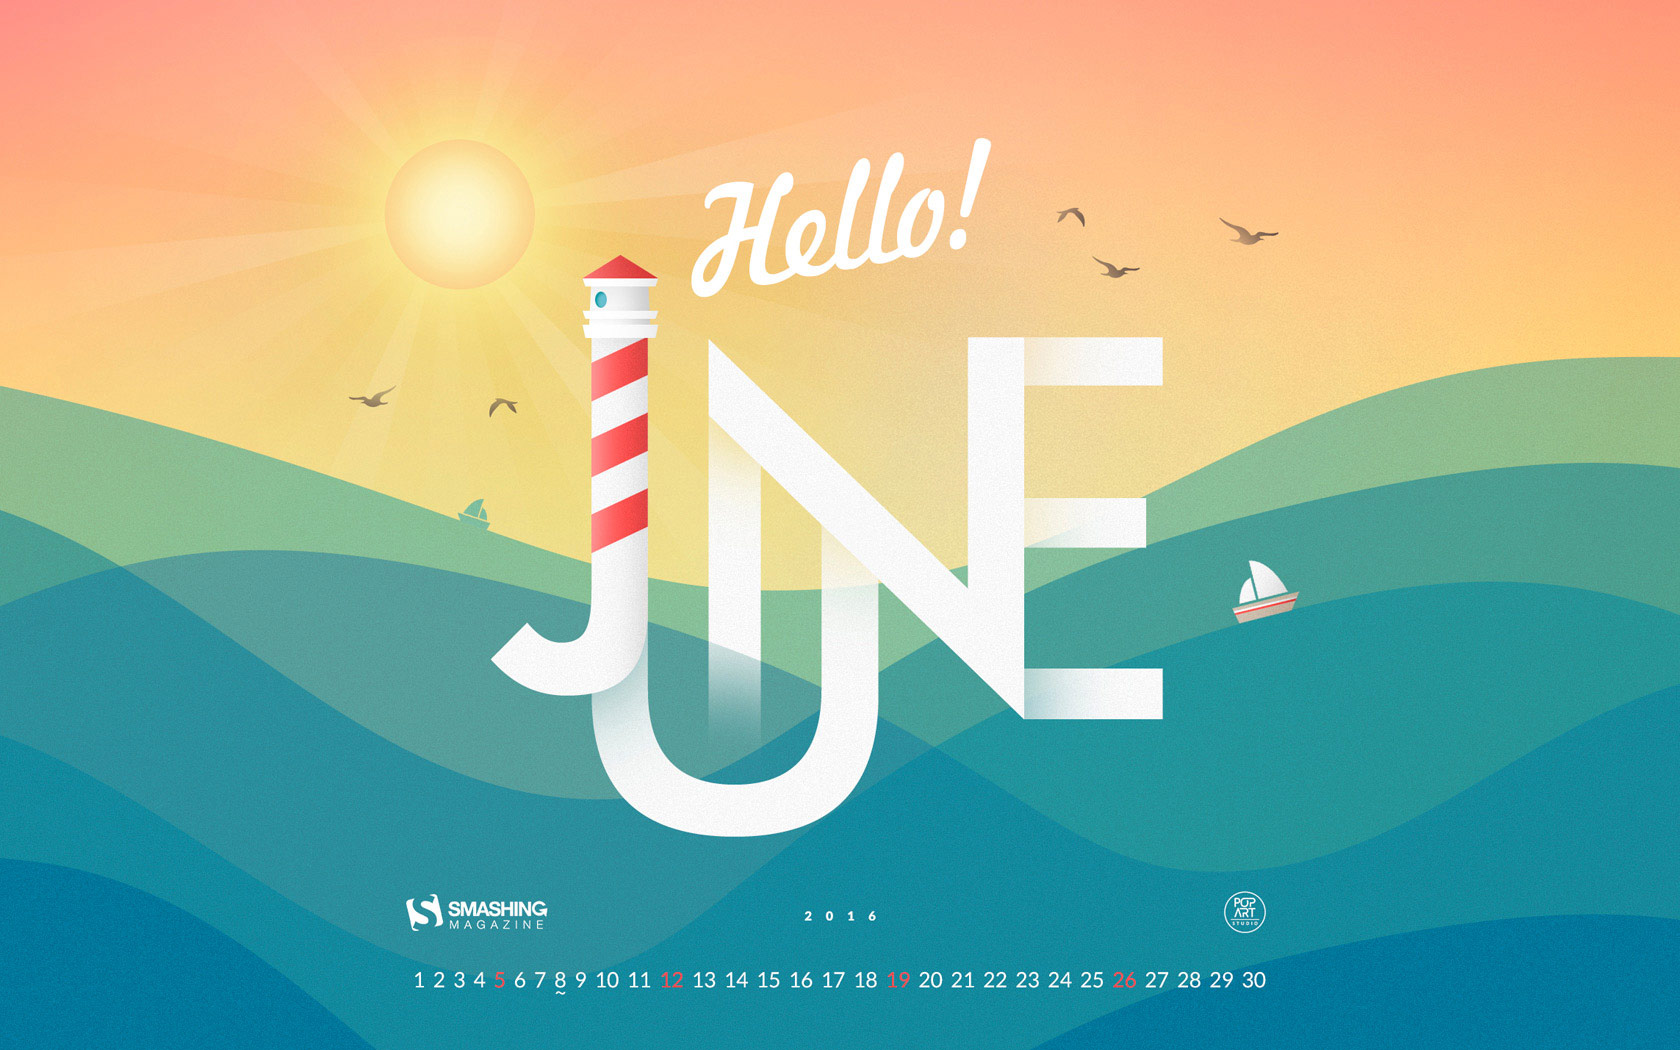 free-download-desktop-wallpaper-calendars-june-2016-smashing-magazine